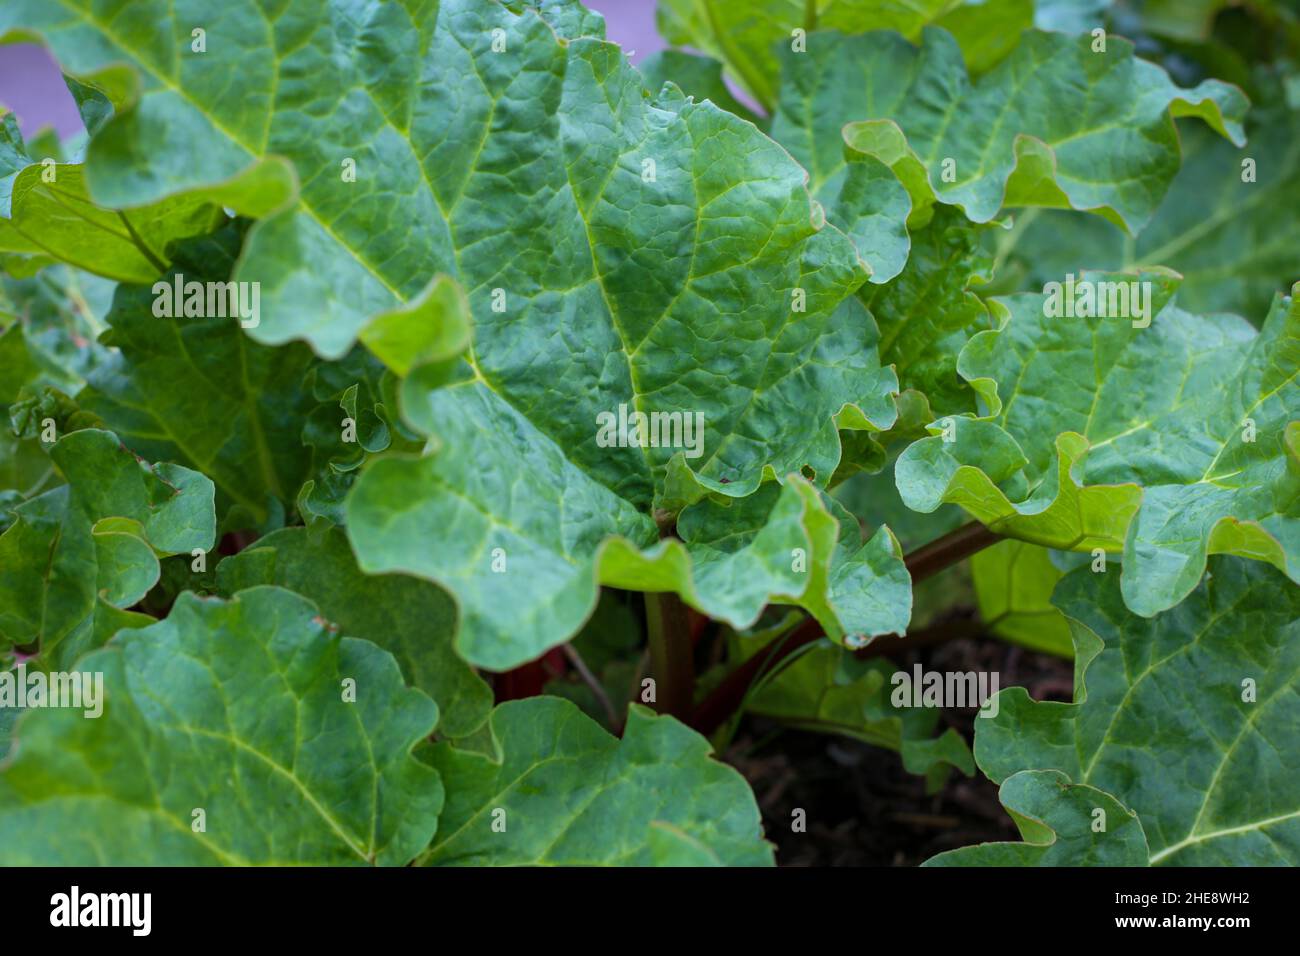 Una pianta di rabarbaro sana che cresce in un giardino biologico mostrando le foglie verdi vibranti che sono velenose da mangiare. Foto Stock